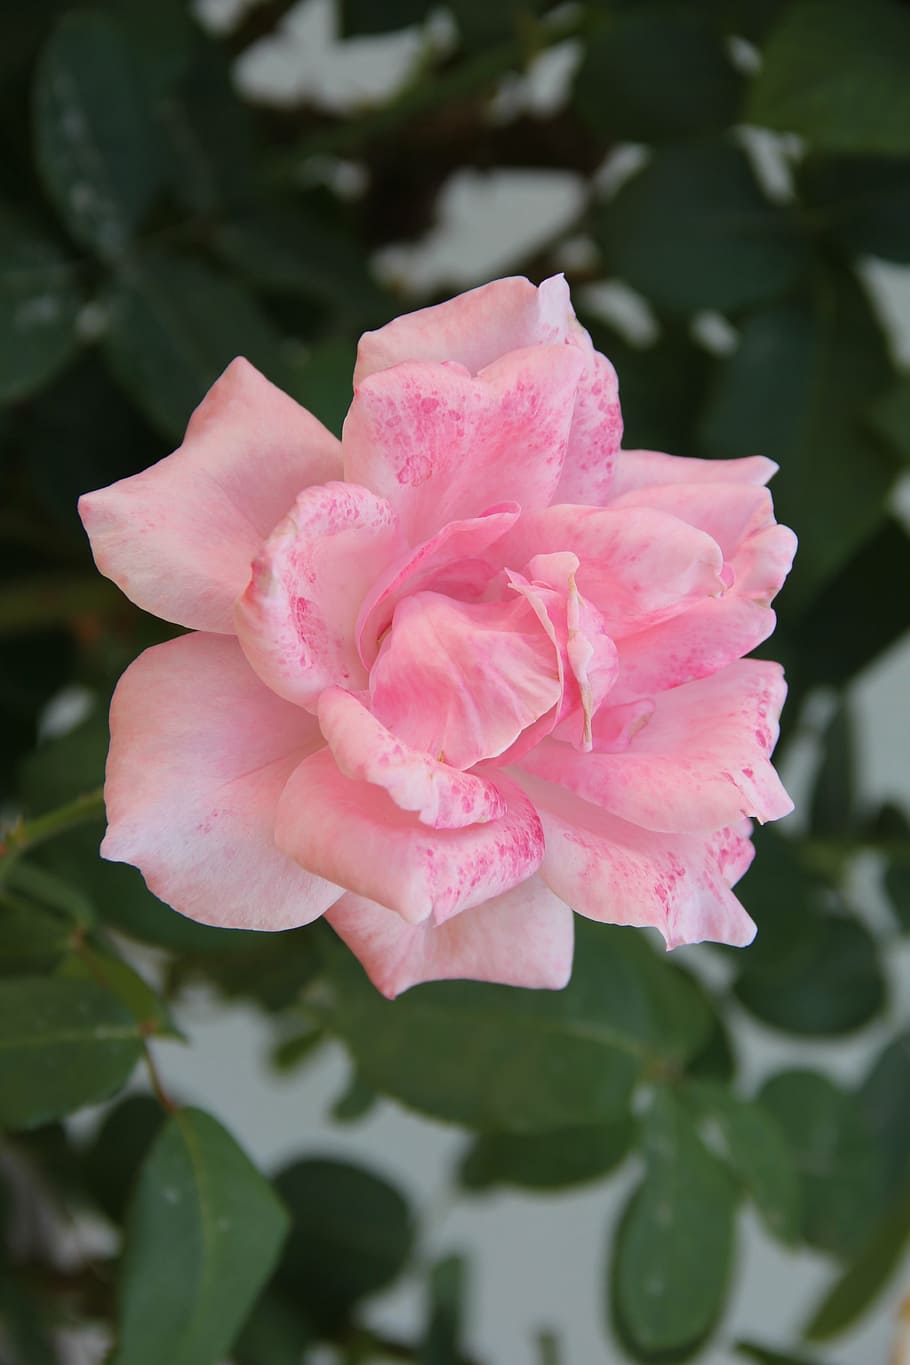 mawar merah muda, taman, flora, alam, pabrik, kelopak, beaury, pendaftaran, romantis, tanaman berbunga